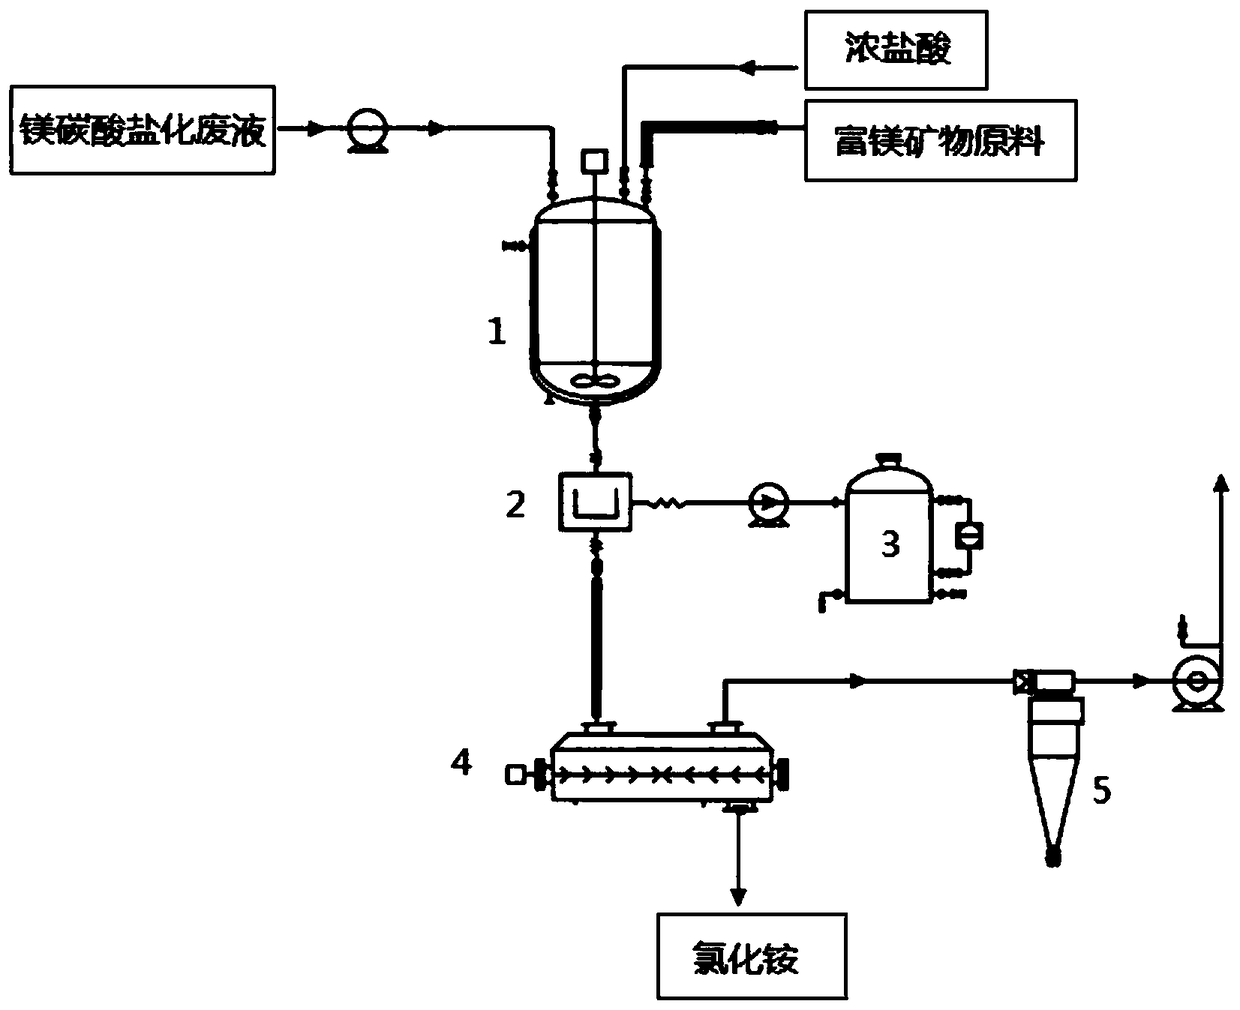 Method for recovering ammonium chloride from magnesium carbonatization waste liquid